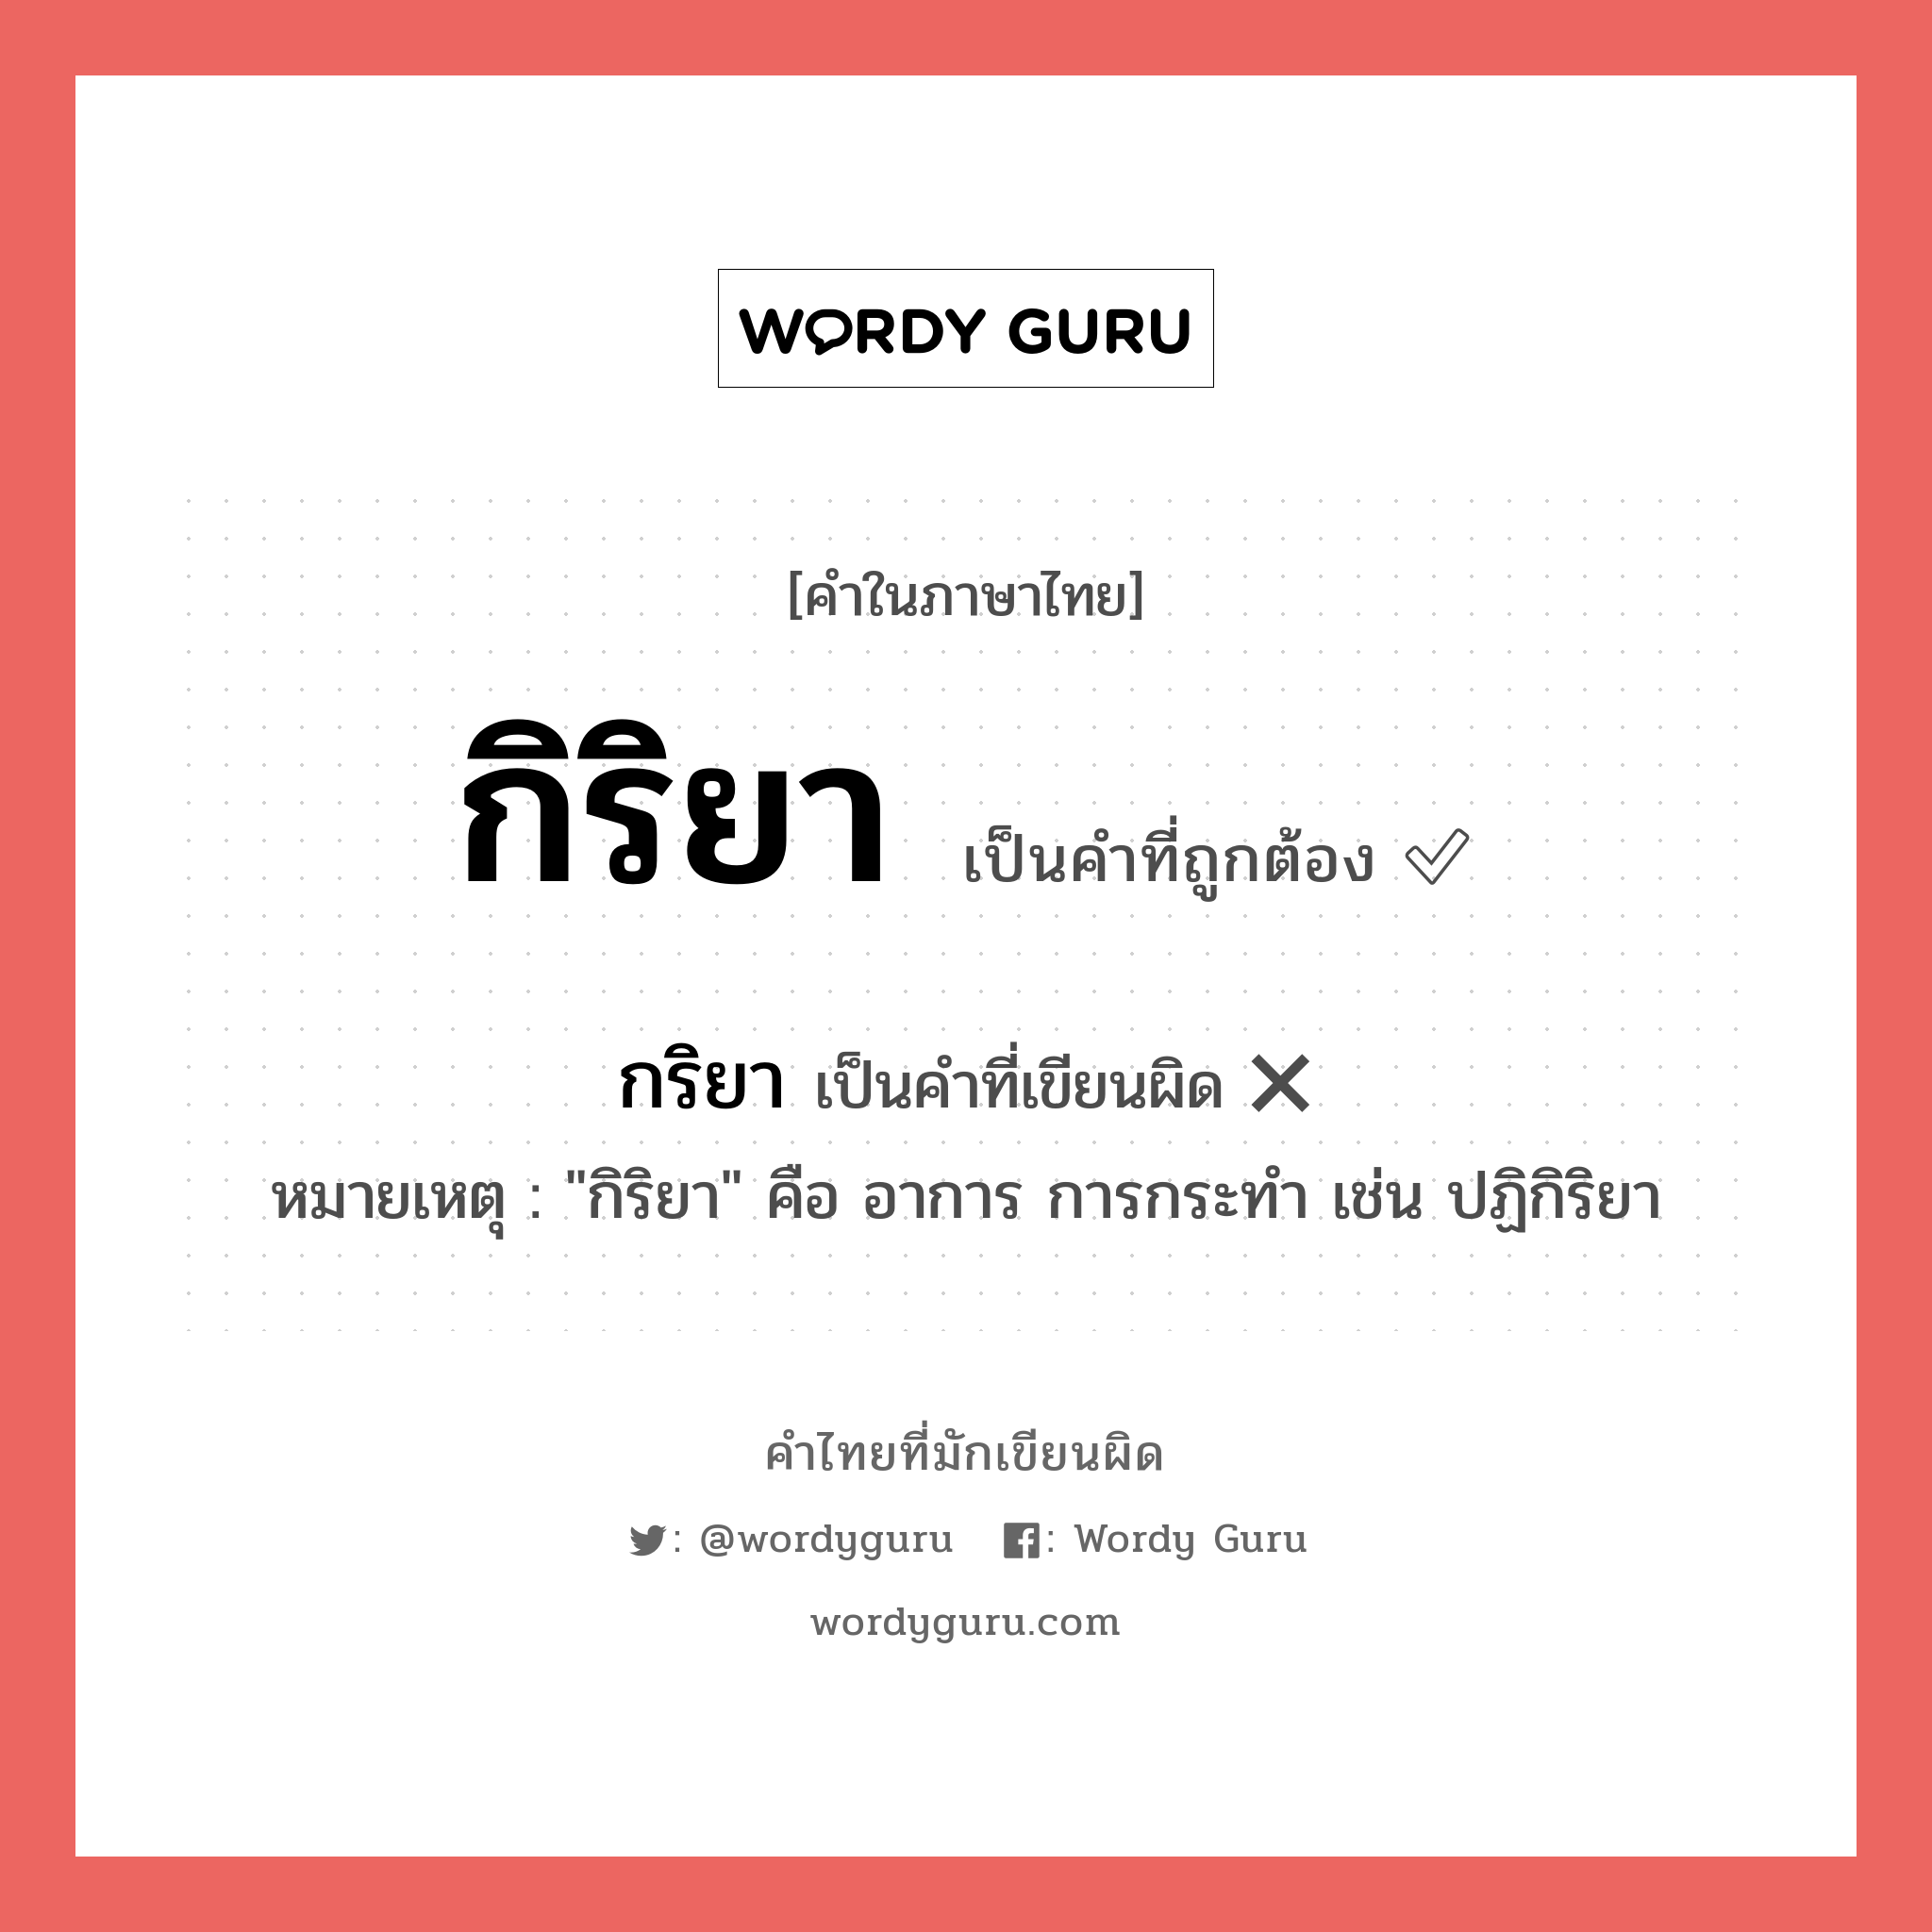 กริยา หรือ กิริยา คำไหนเขียนถูก?, คำในภาษาไทยที่มักเขียนผิด กิริยา คำที่ผิด ❌ กริยา หมายเหตุ "กิริยา" คือ อาการ การกระทำ เช่น ปฏิกิริยา